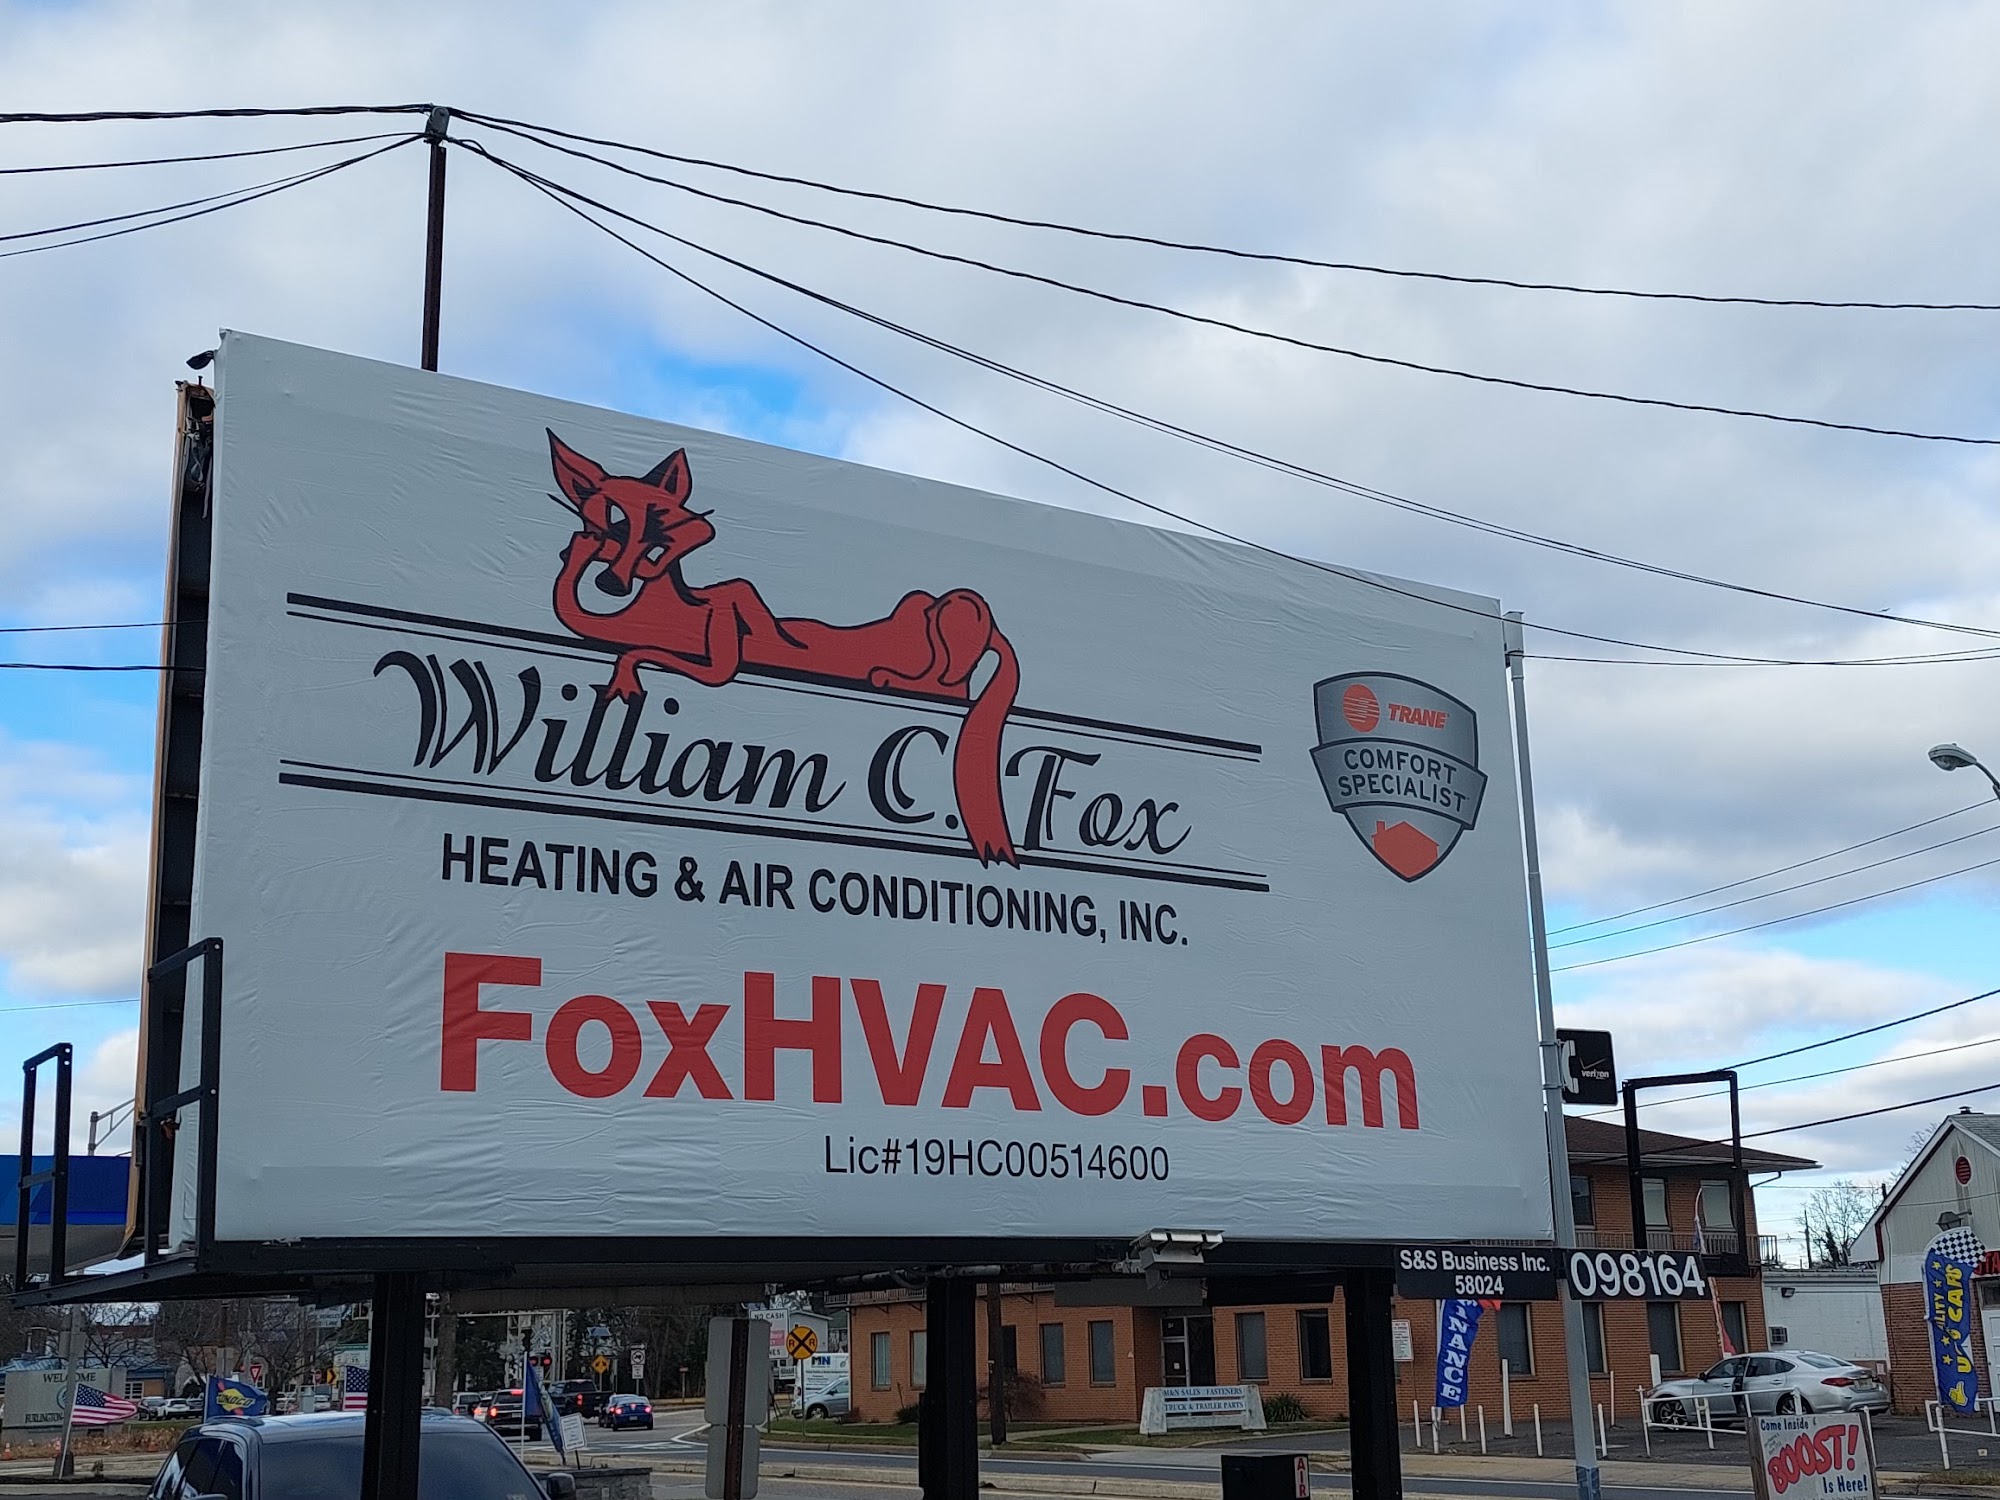 William C. Fox Heating & Air Conditioning